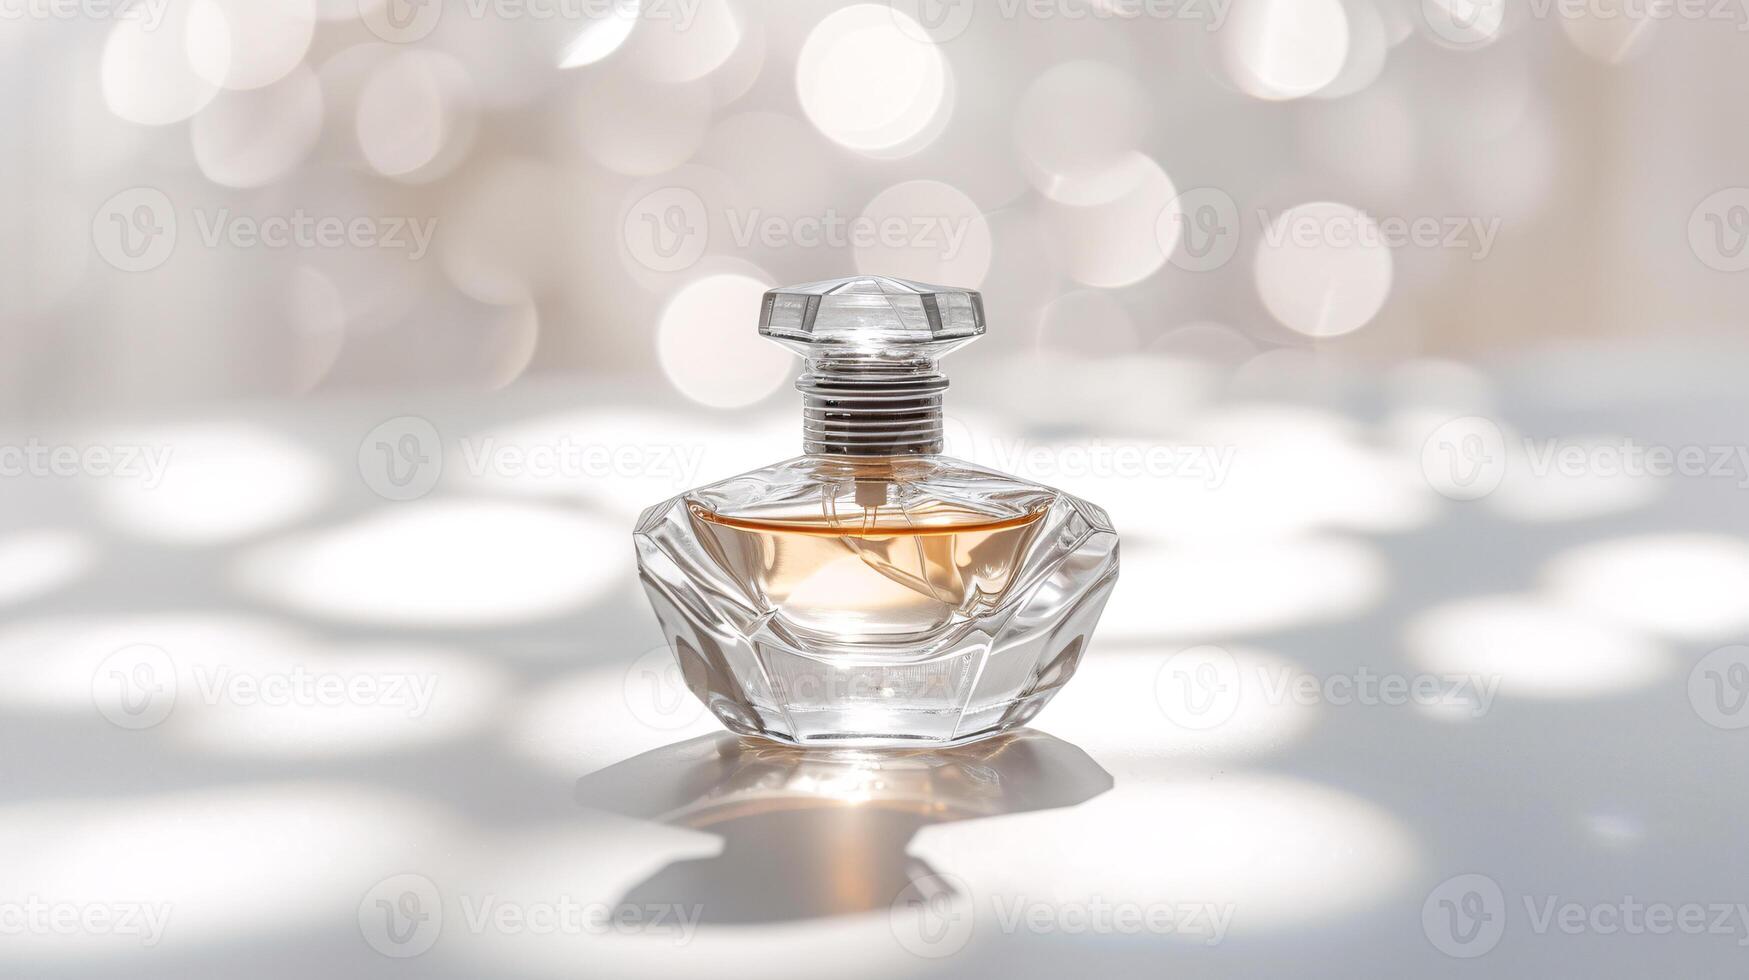 un élégant parfum bouteille, scintillant avec sophistication photo